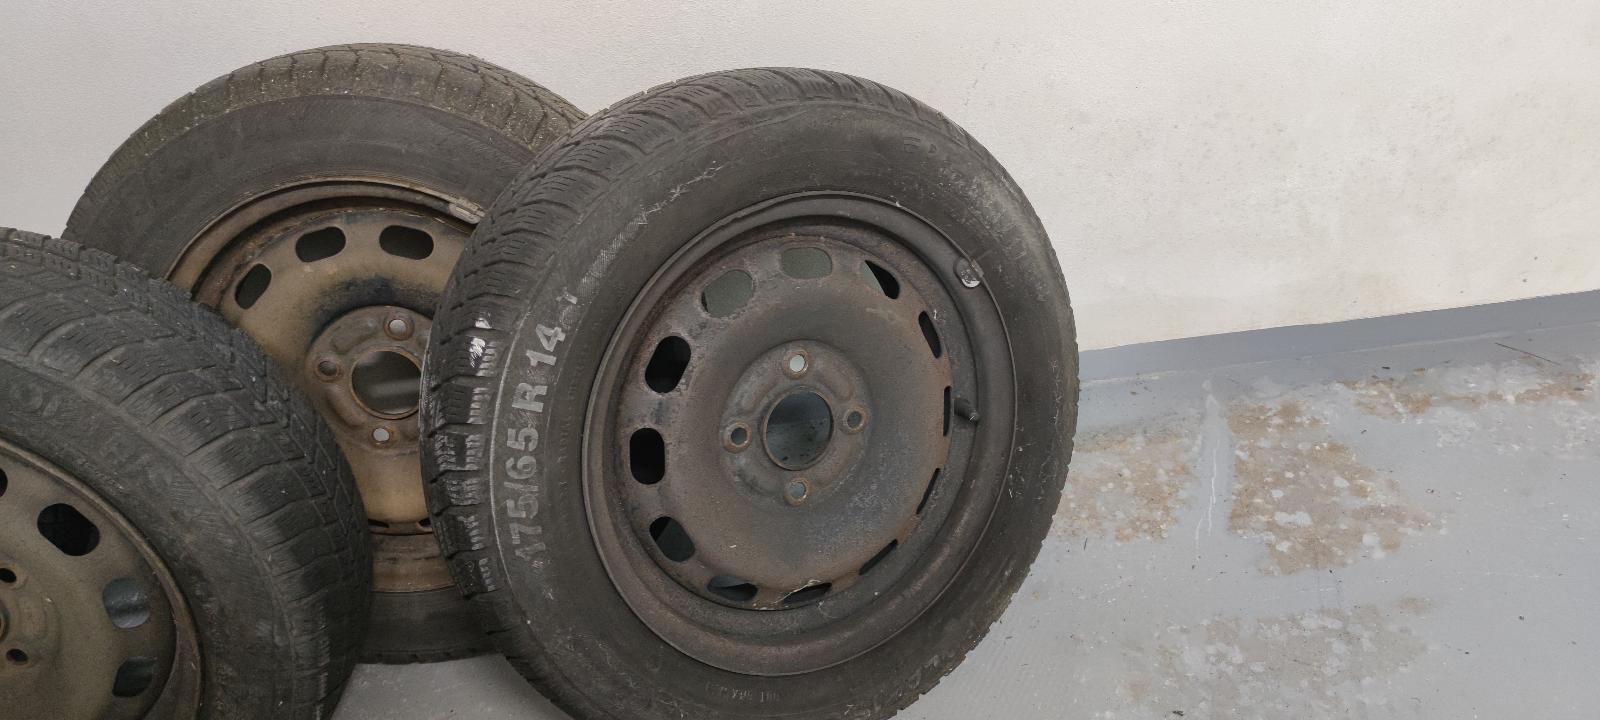 4 Kola se zimními pneumatikami z Ford Fiesta 175/65 R14 - Kola a disky pro osobní vozidla